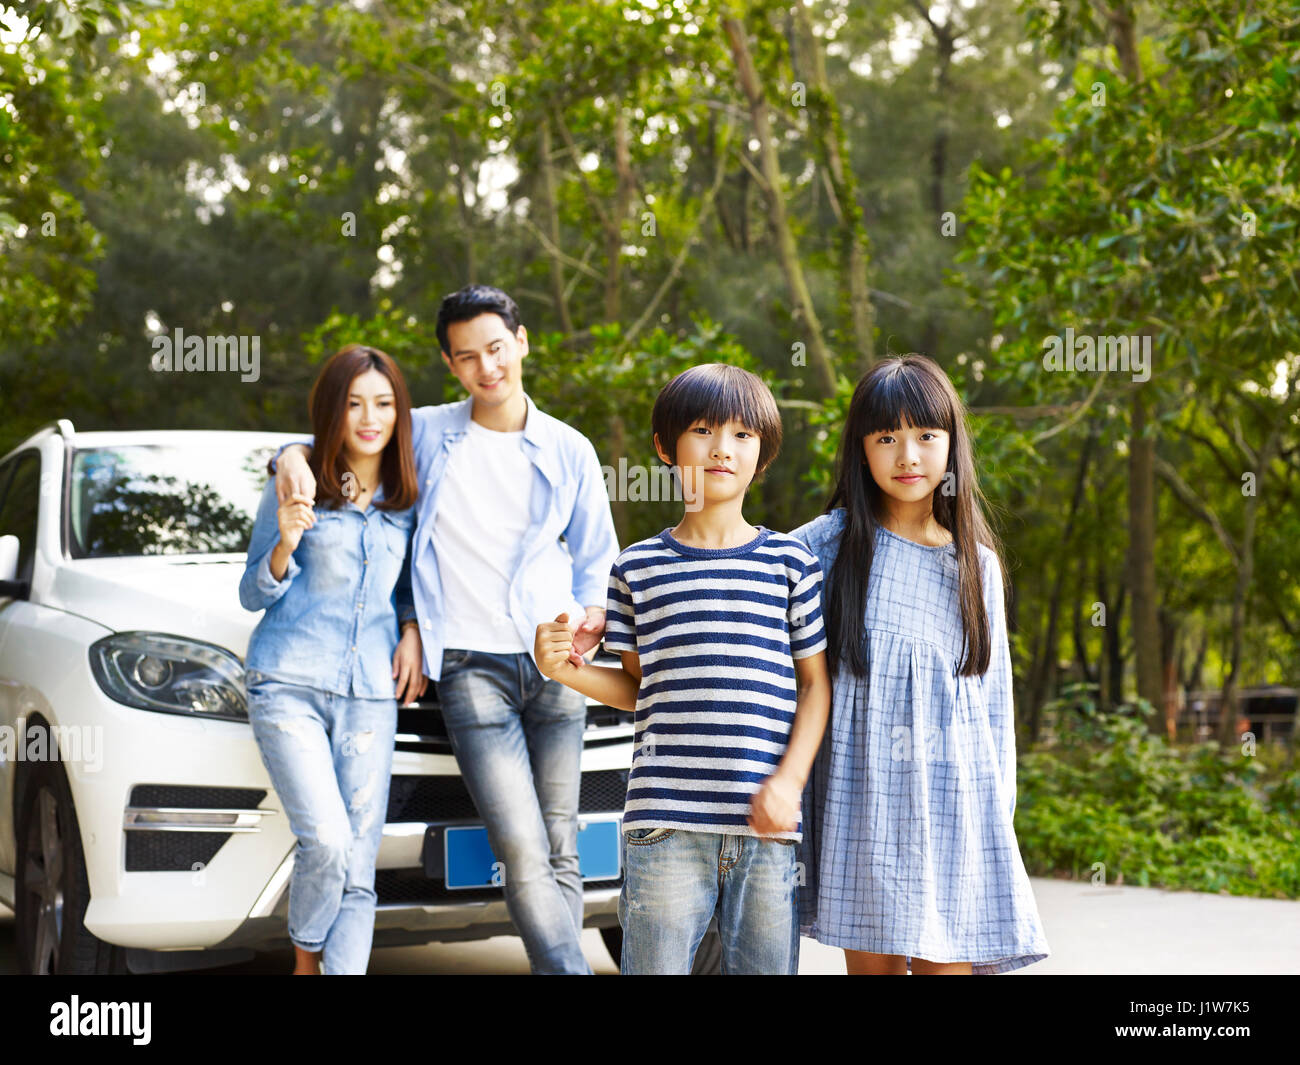 Familia de Asia con dos niños que viajan en coche. Foto de stock